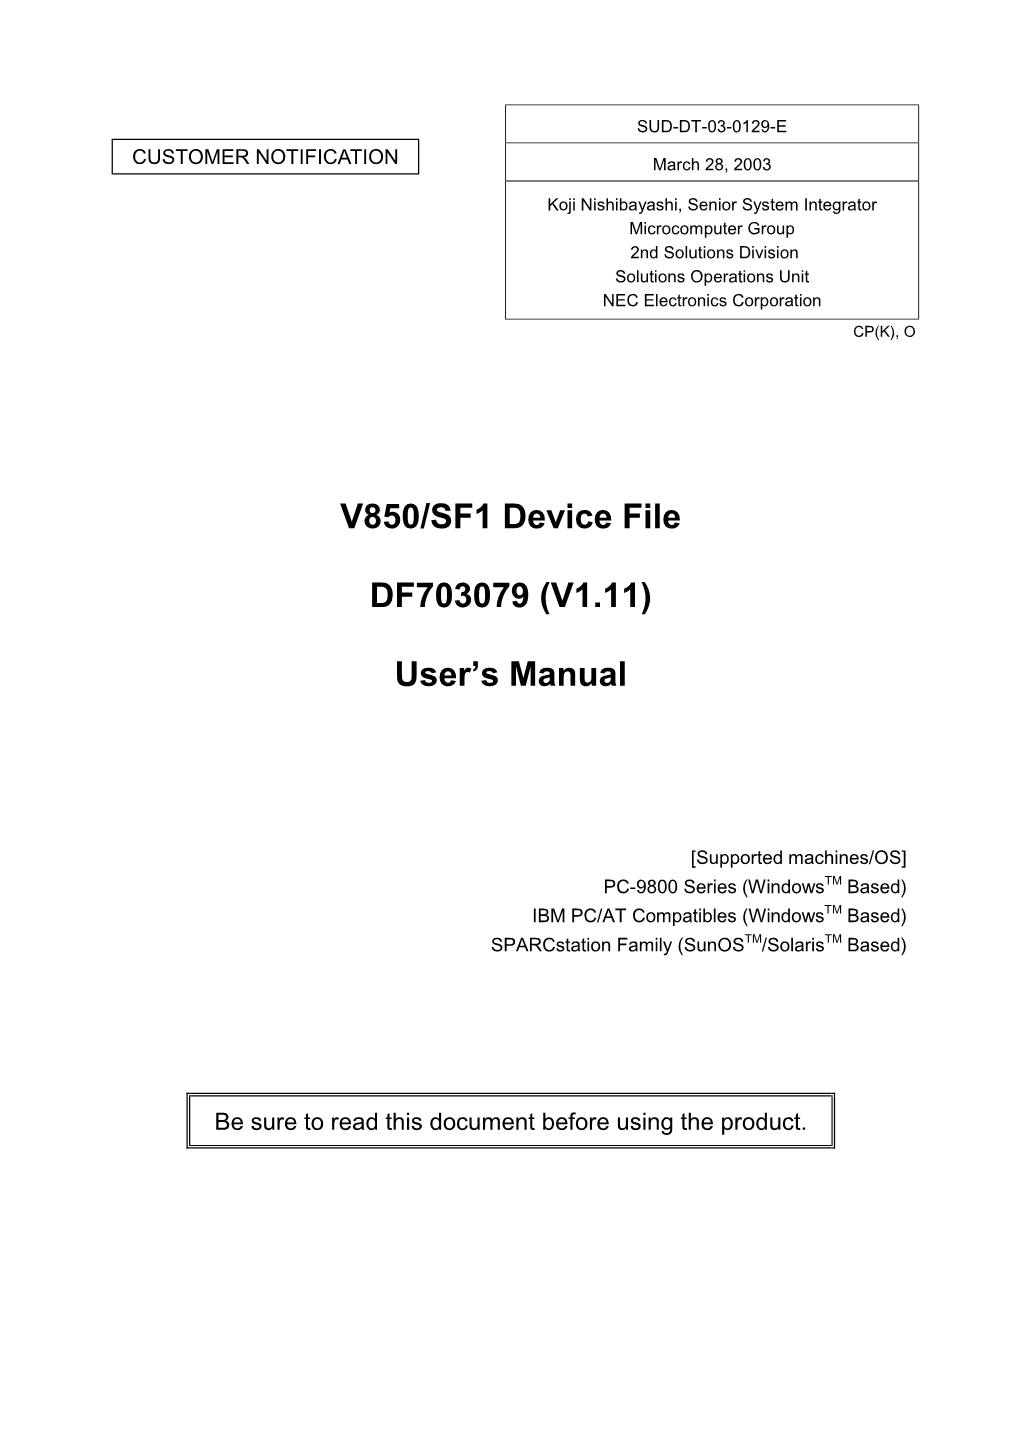 V850/SF1 Device File DF703079 (V1.11) User's Manual